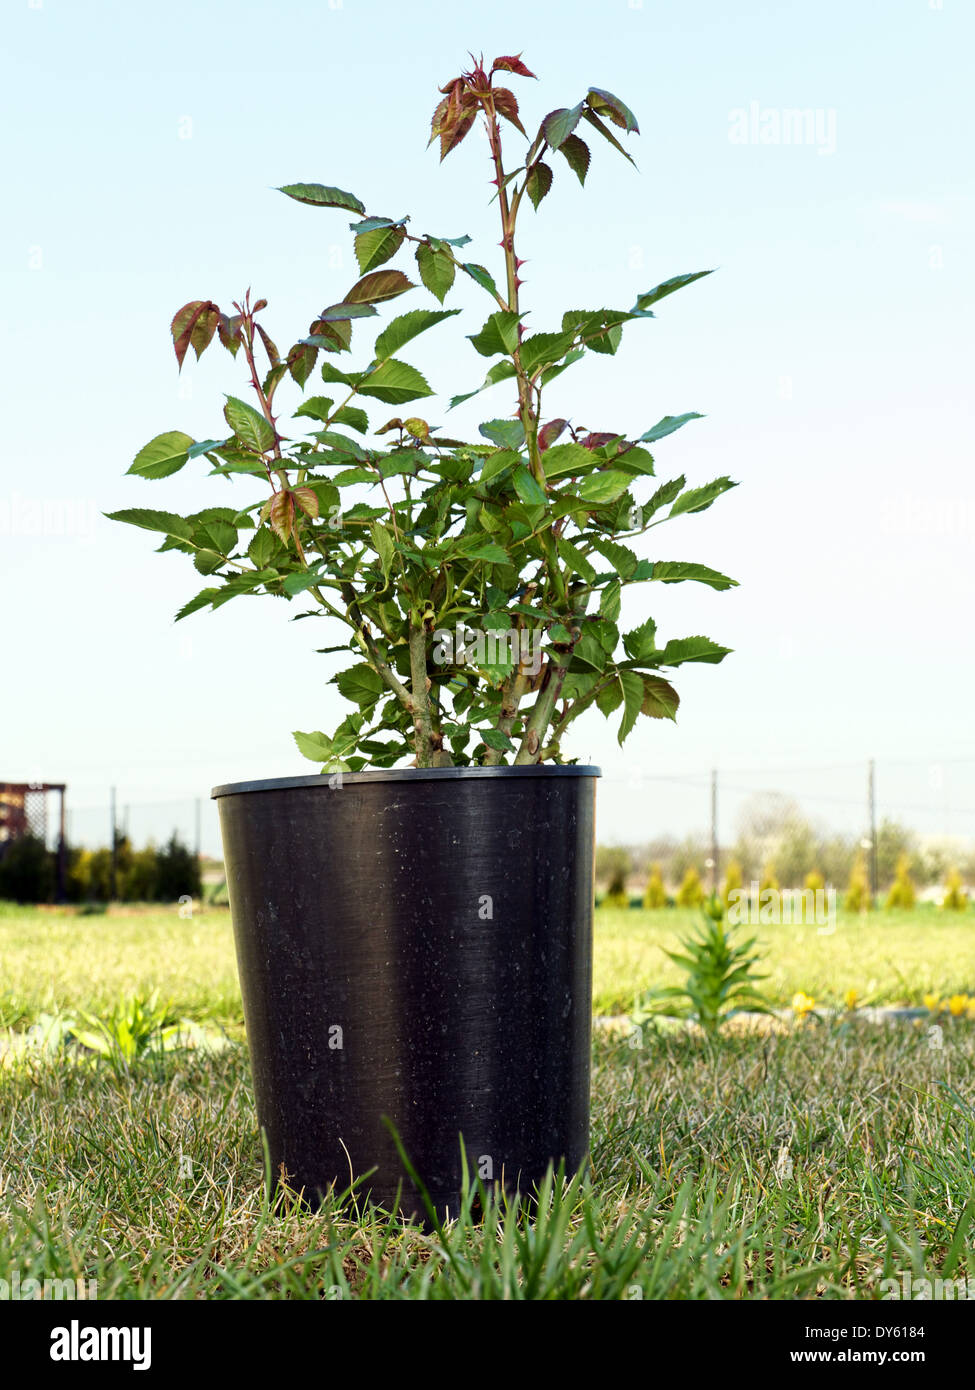 Rosa de Maceta arbusto listo para ser plantado en el suelo Foto de stock